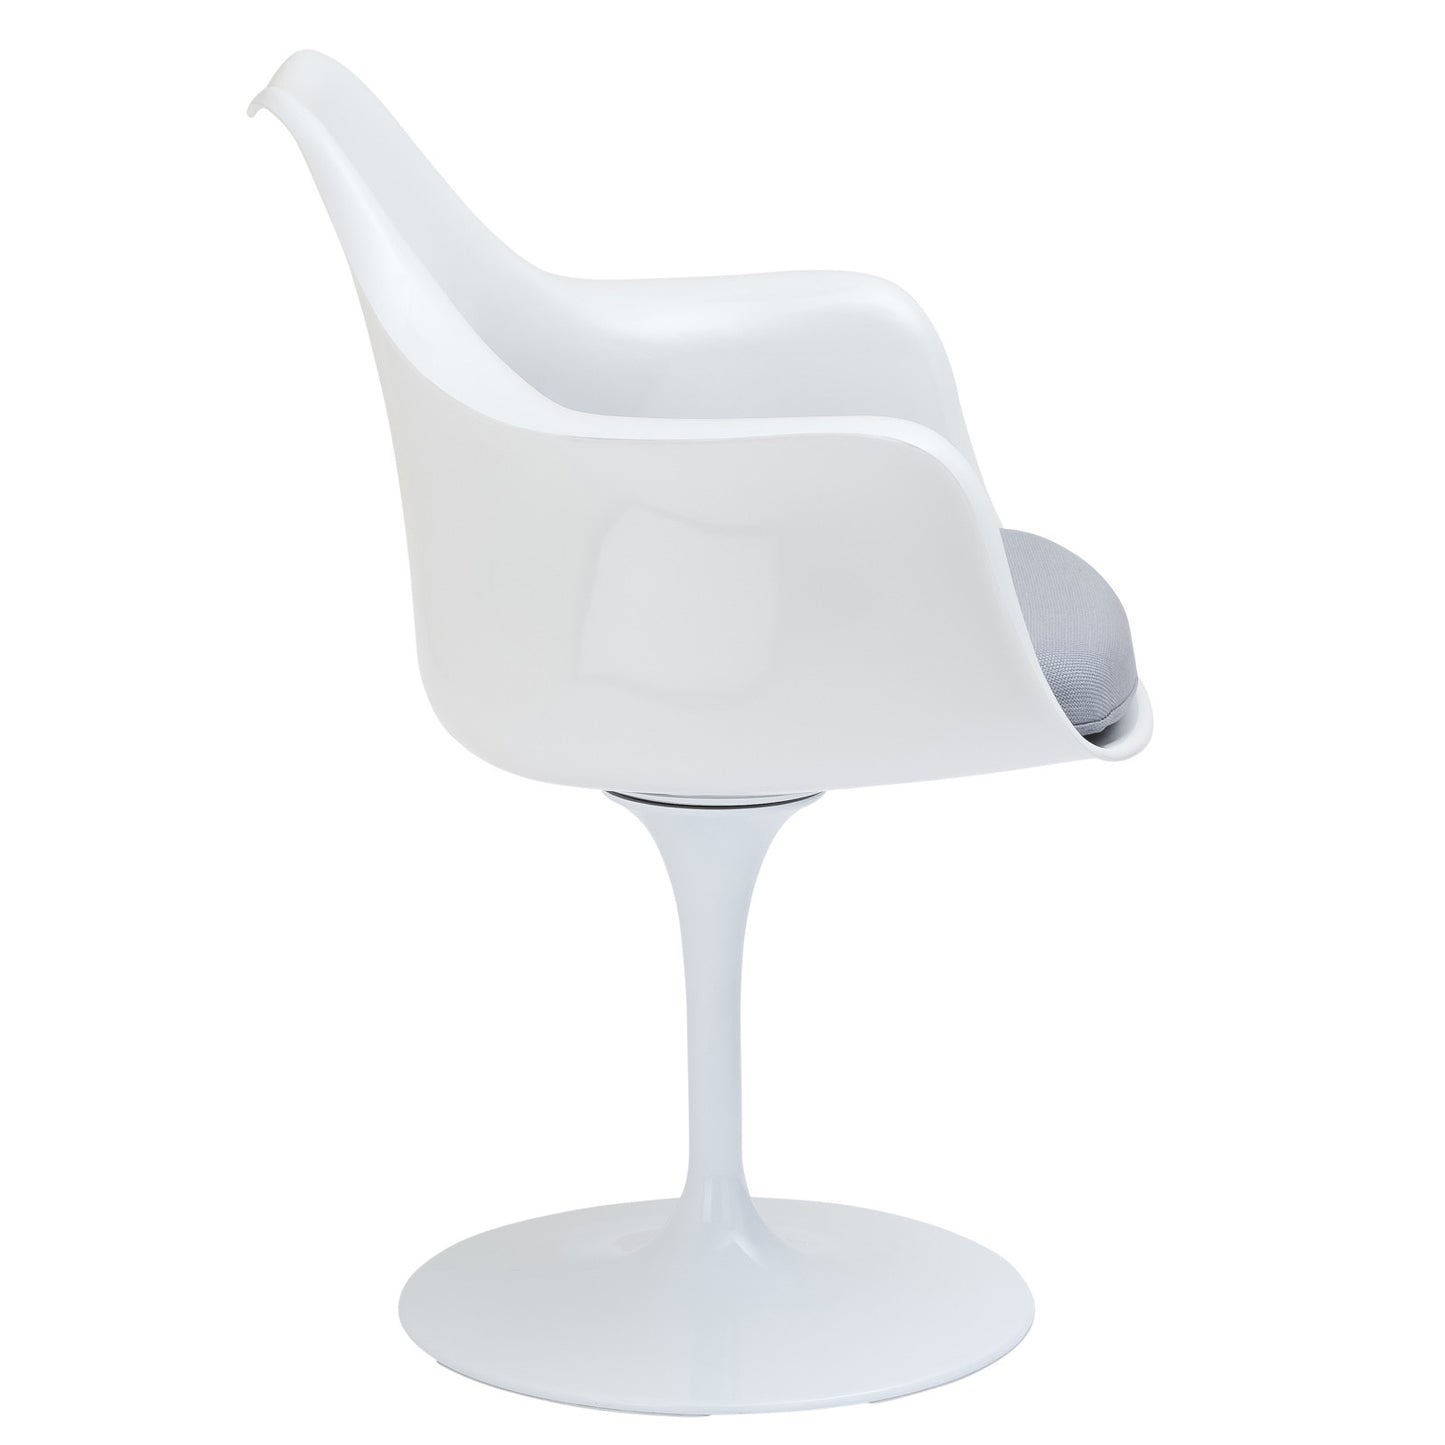 EdgeMod Daisy Arm Chair